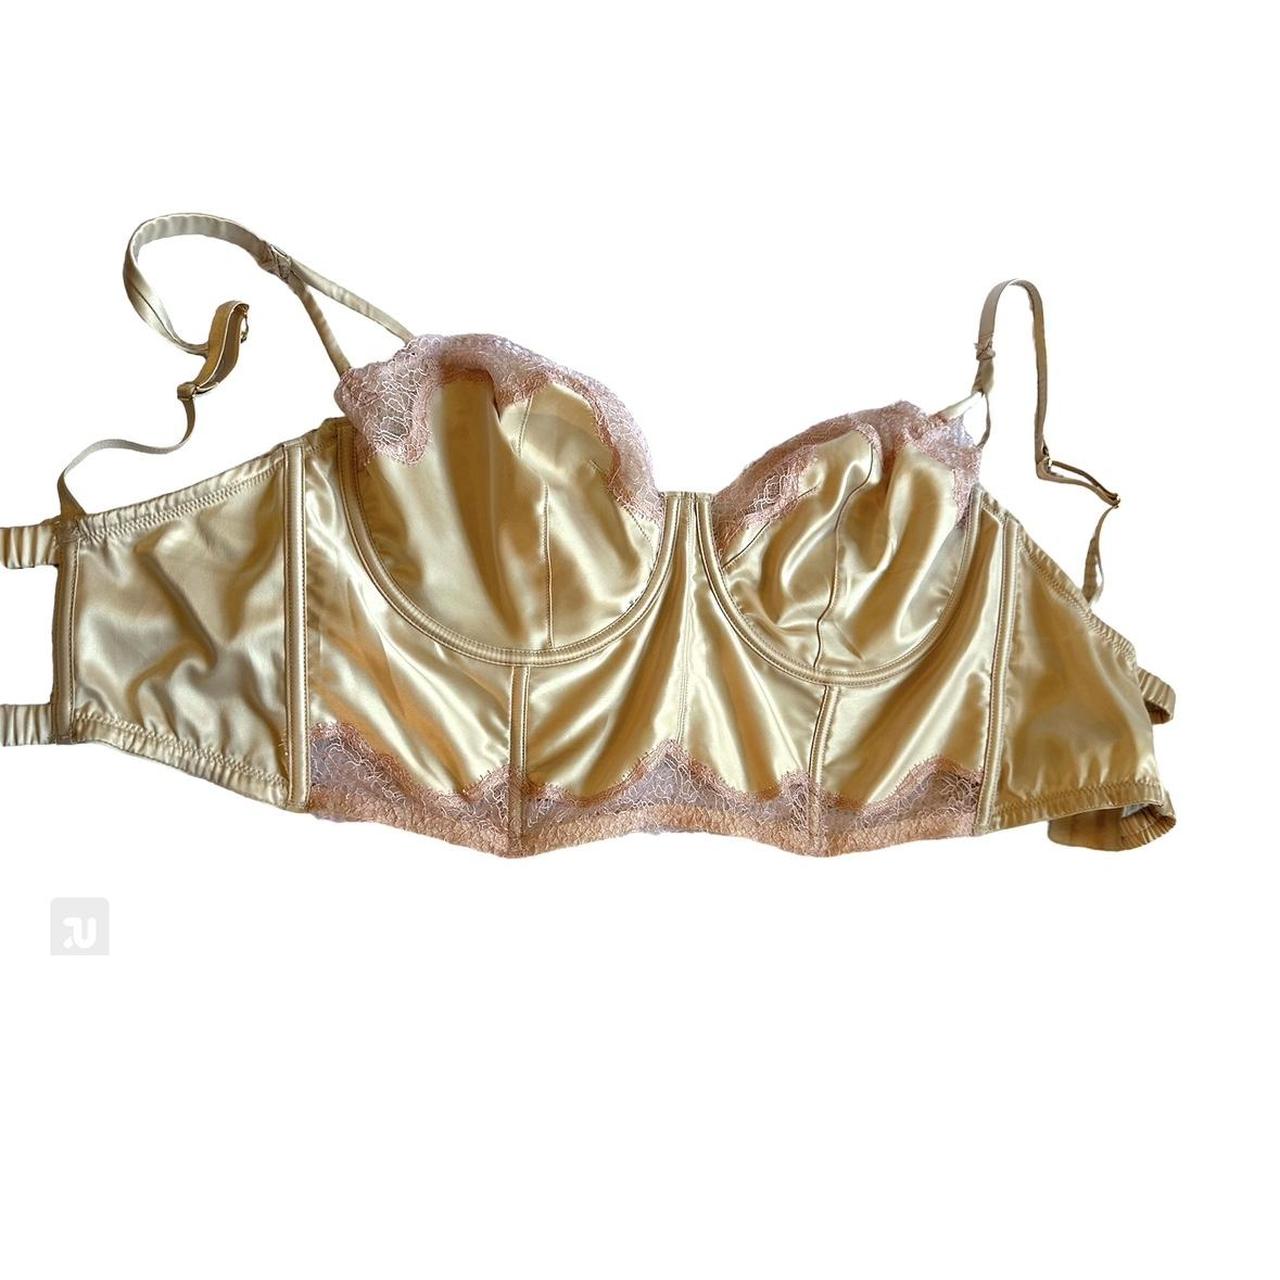 Vintage Victoria's Secret embroidered bra 34-36c, - Depop